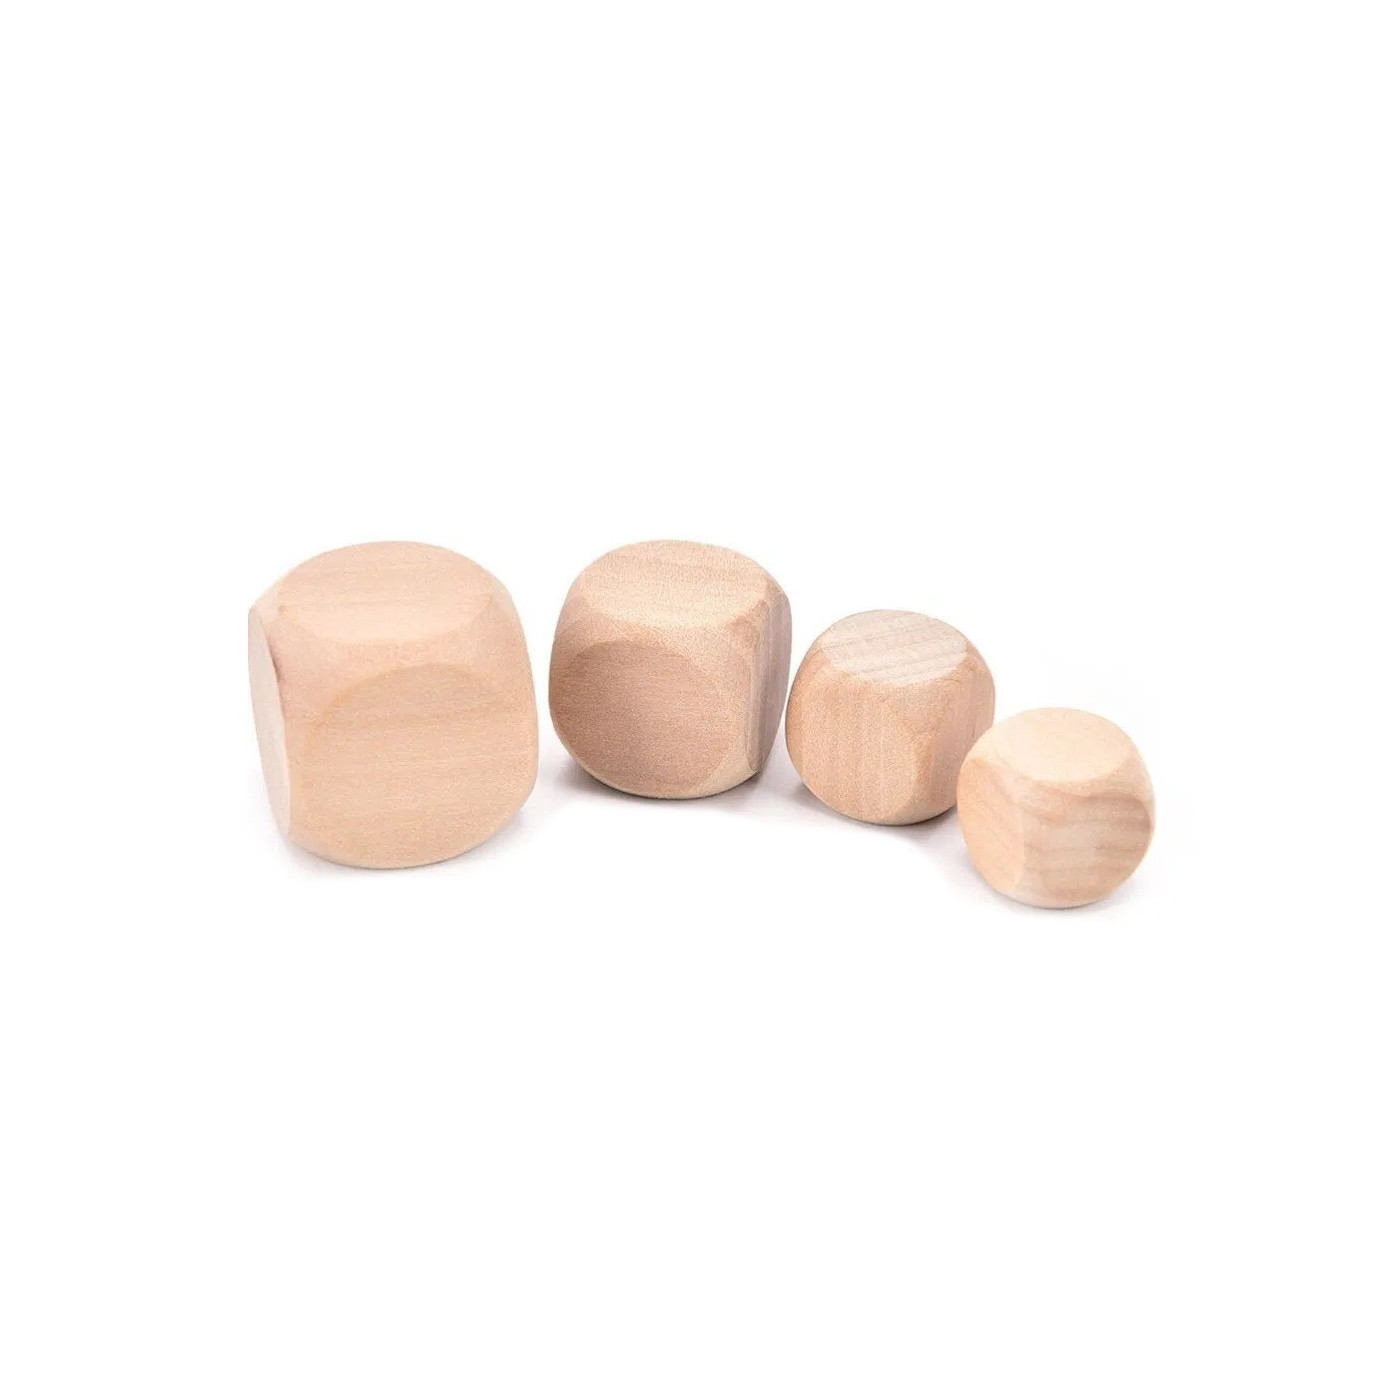 Zestaw 100 drewnianych kostek (kostki), rozmiar: średni (16 mm)